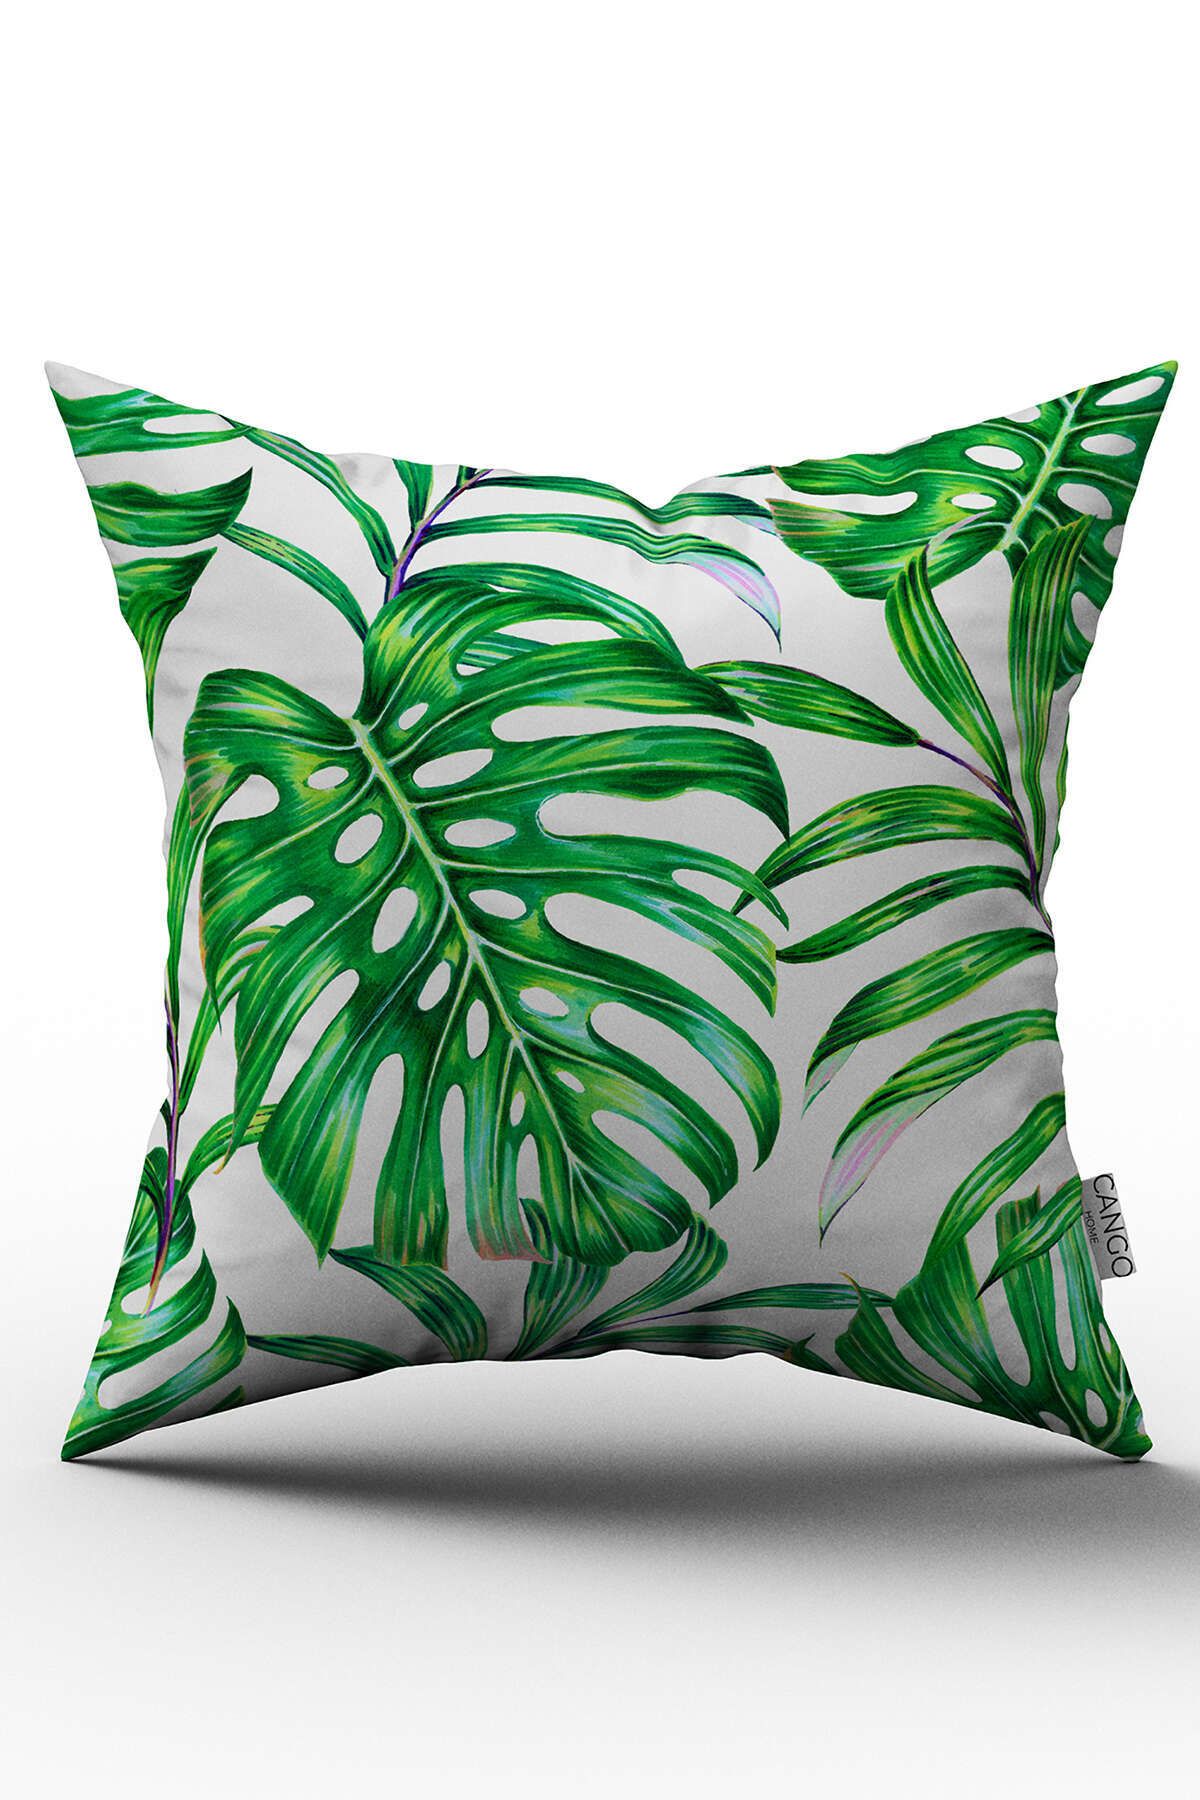 Cango Home Çift Taraflı Yeşil Tropikal Yaprak Desenli Dijital Baskılı Kırlent Kılıfı - Otyk491-ct